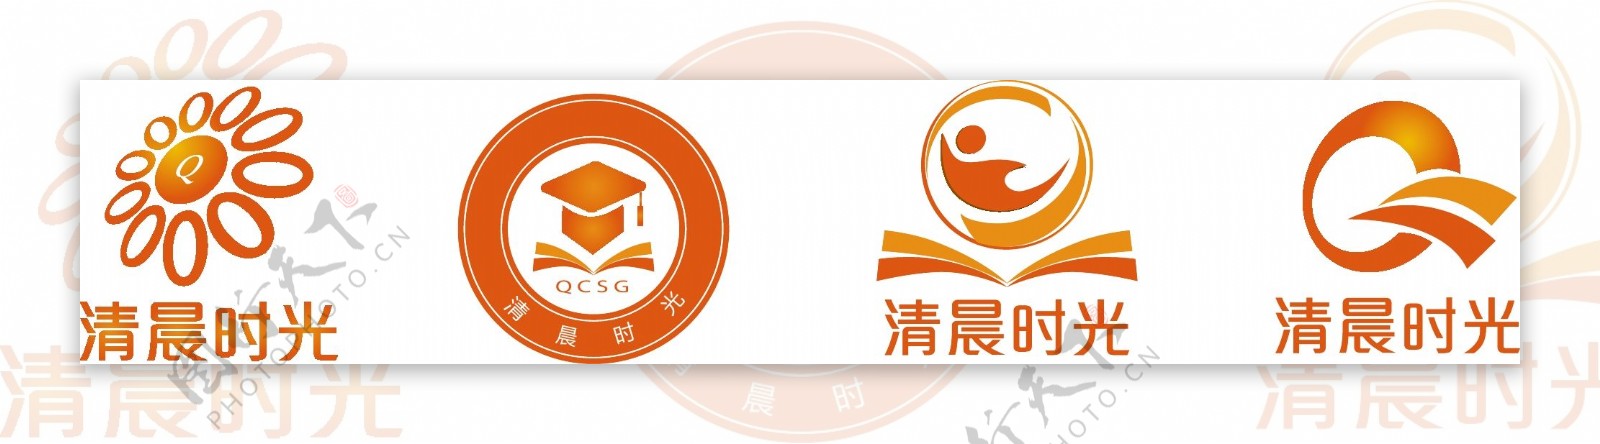 小班课程logo图片